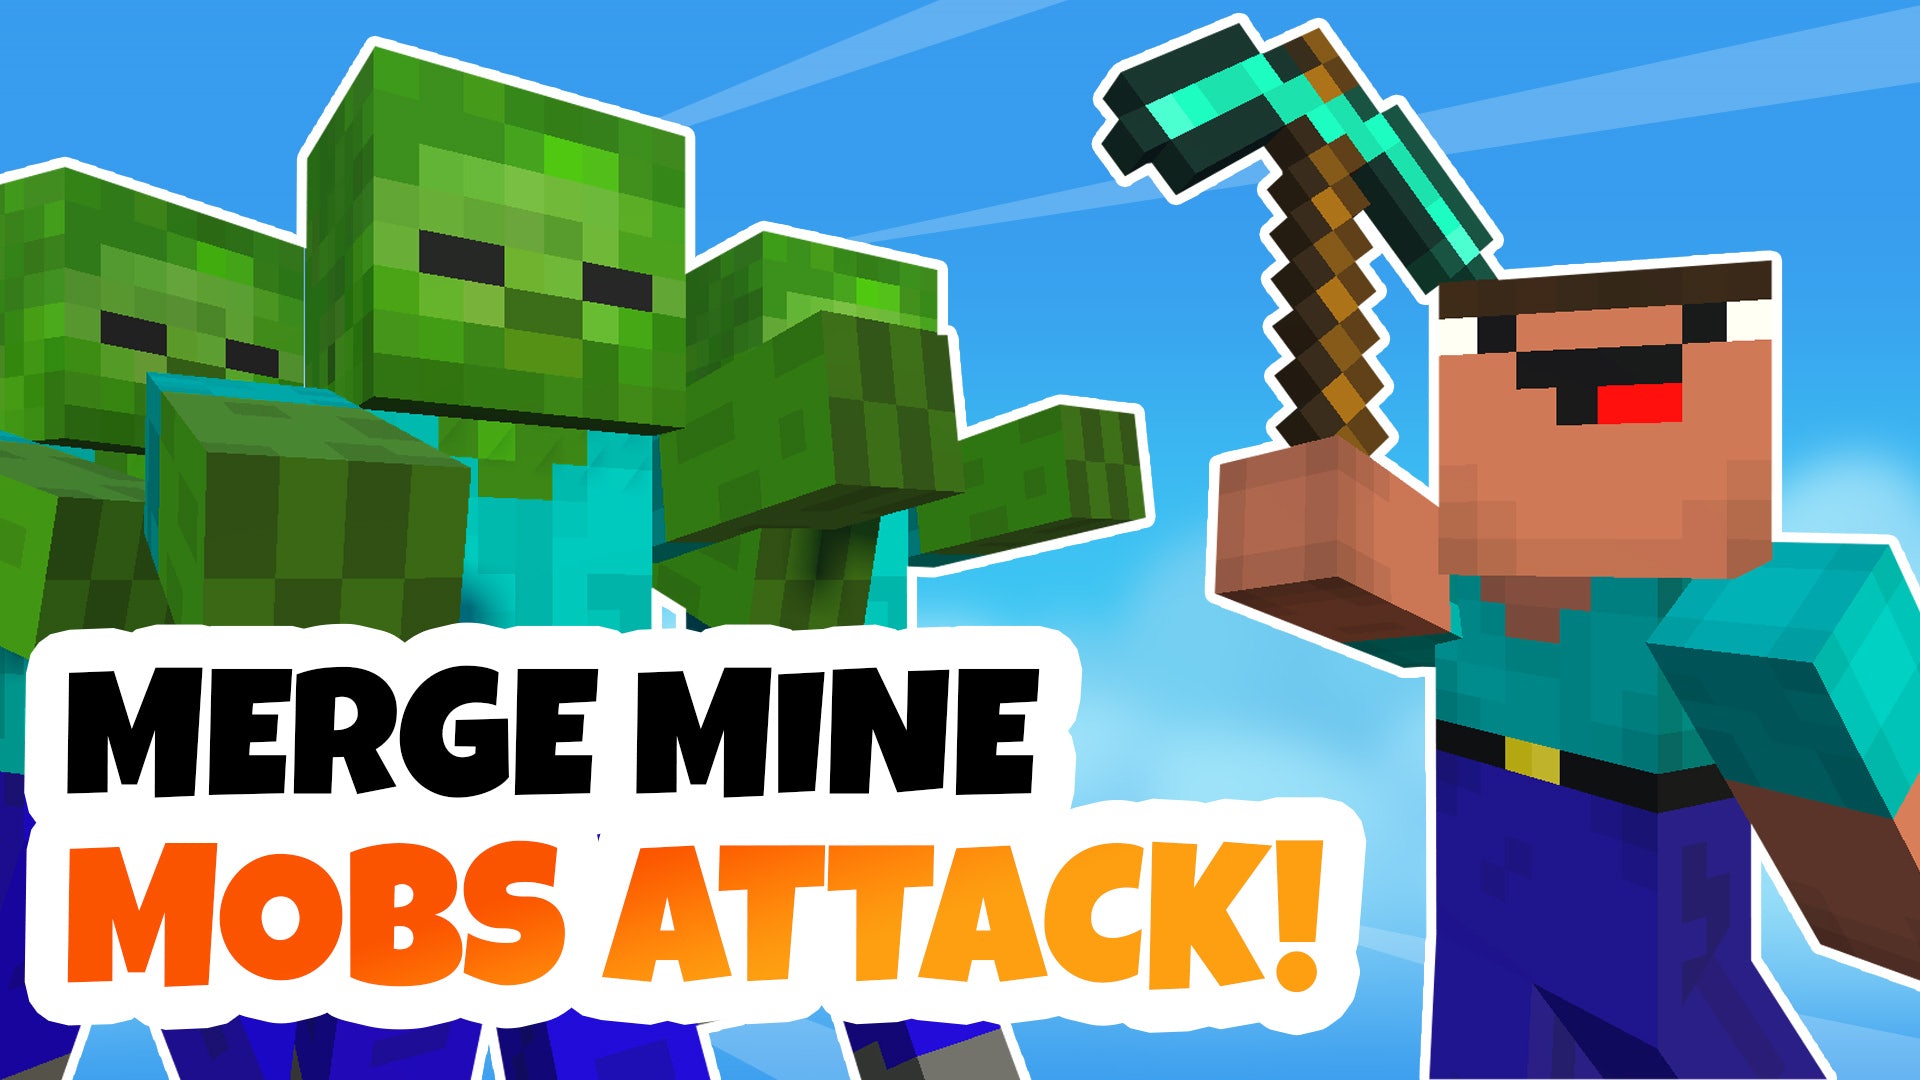 Merge Mine: Mobs Attack!